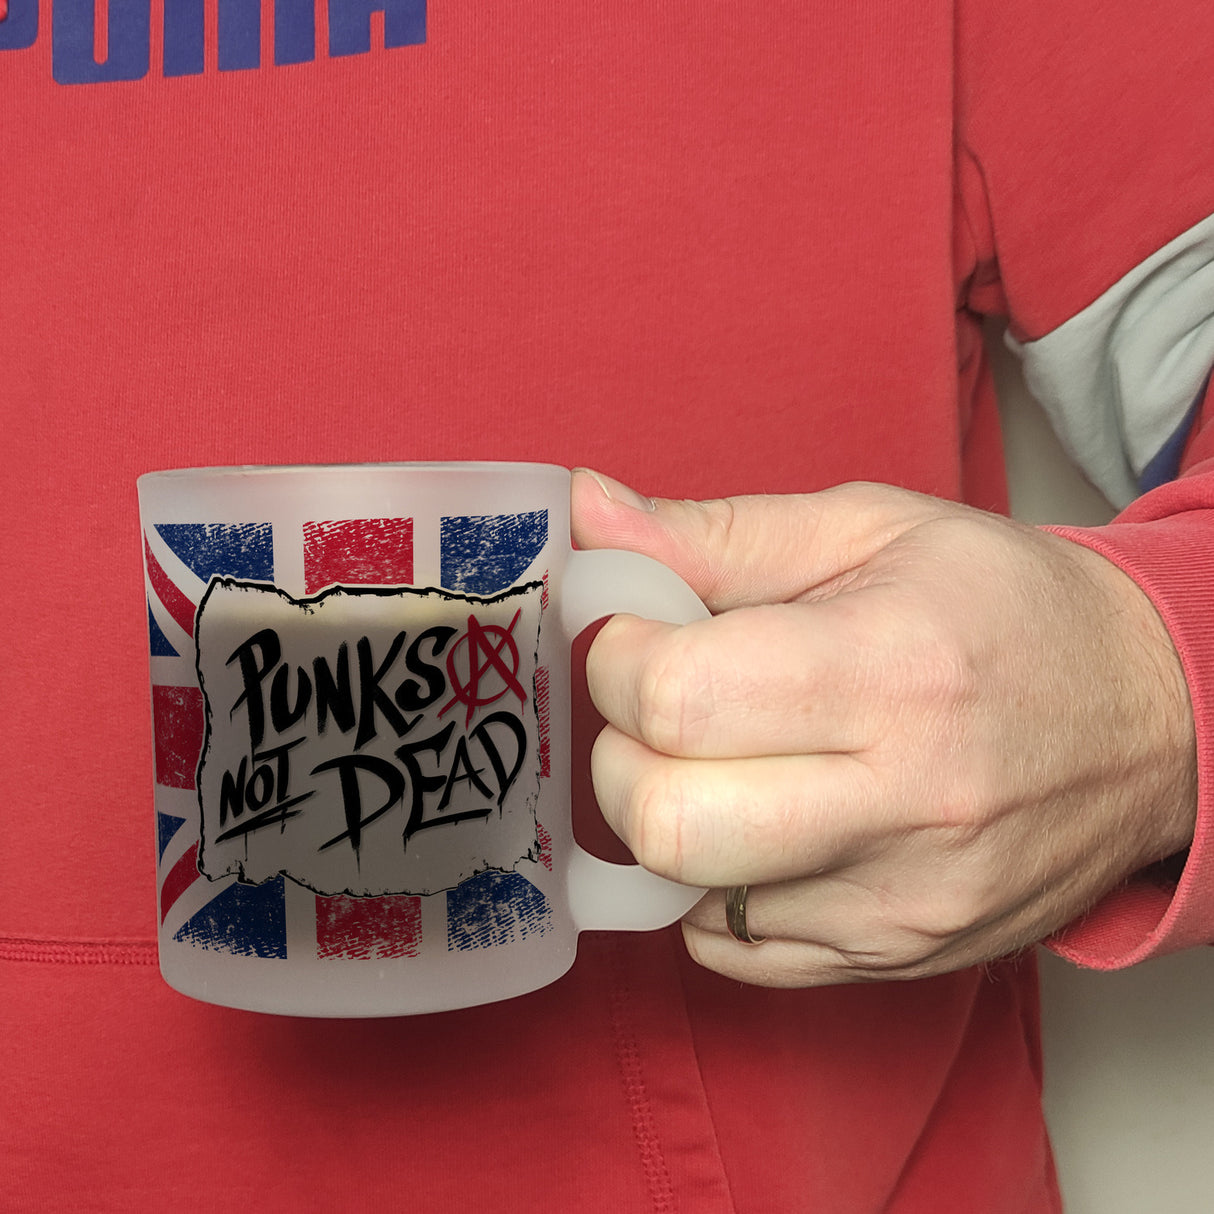 Punks not Dead Union Jack Kaffeebecher